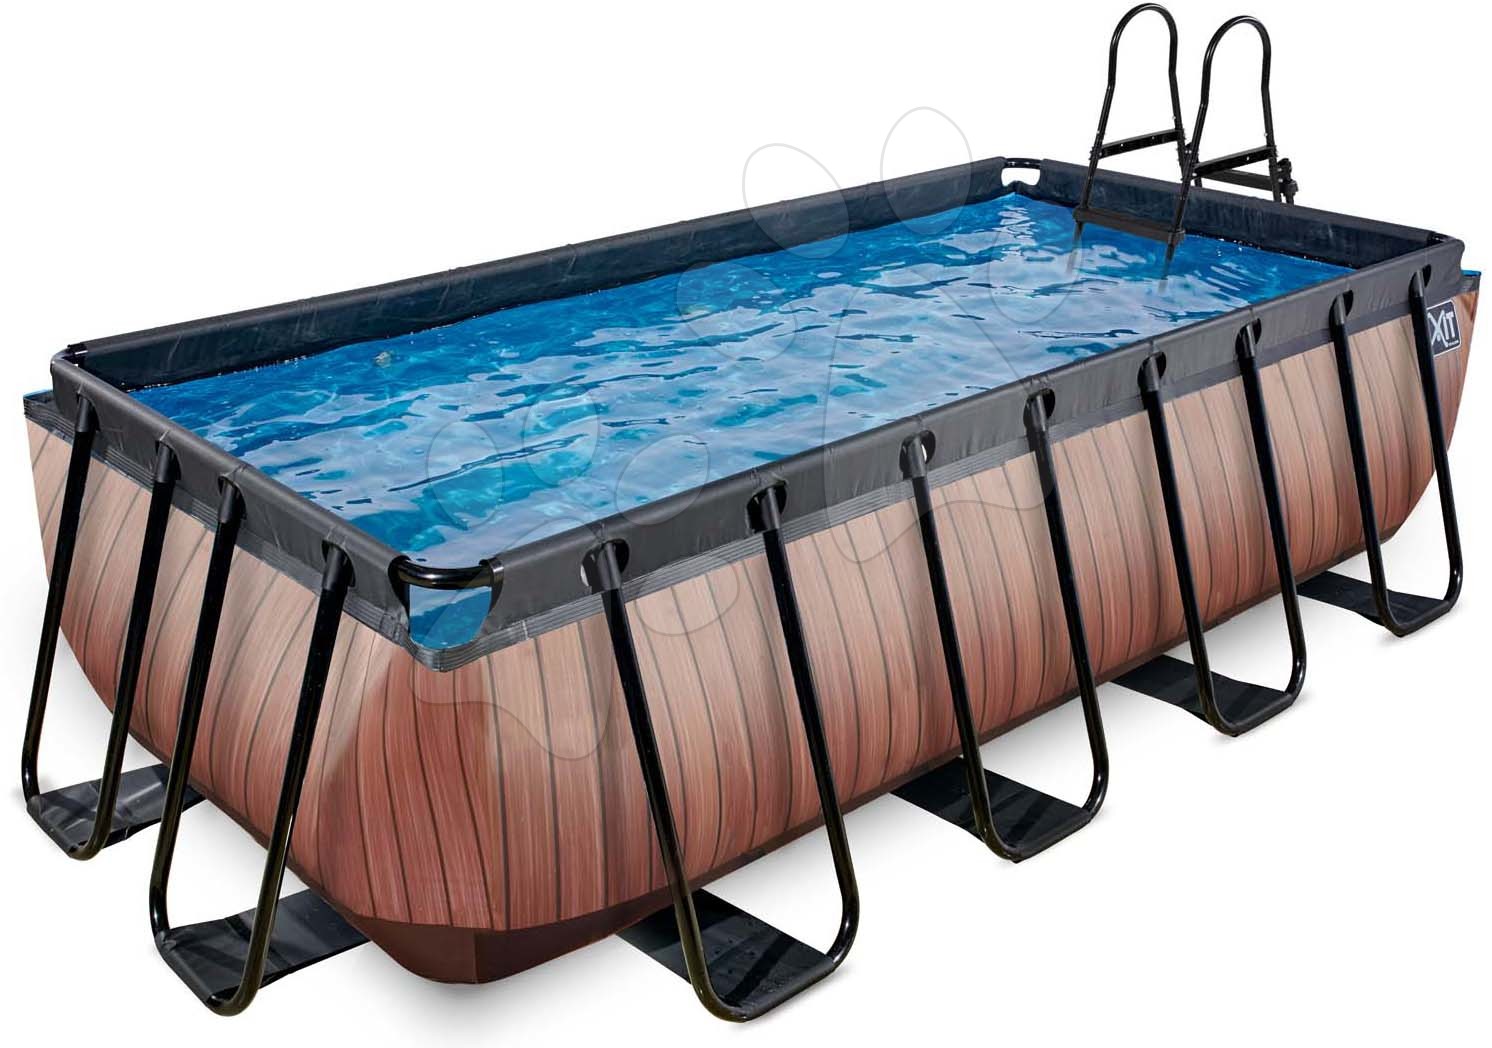 Medence szűrővel Wood pool Exit Toys acél medencekeret 400*200*100 cm barna 6 évtől